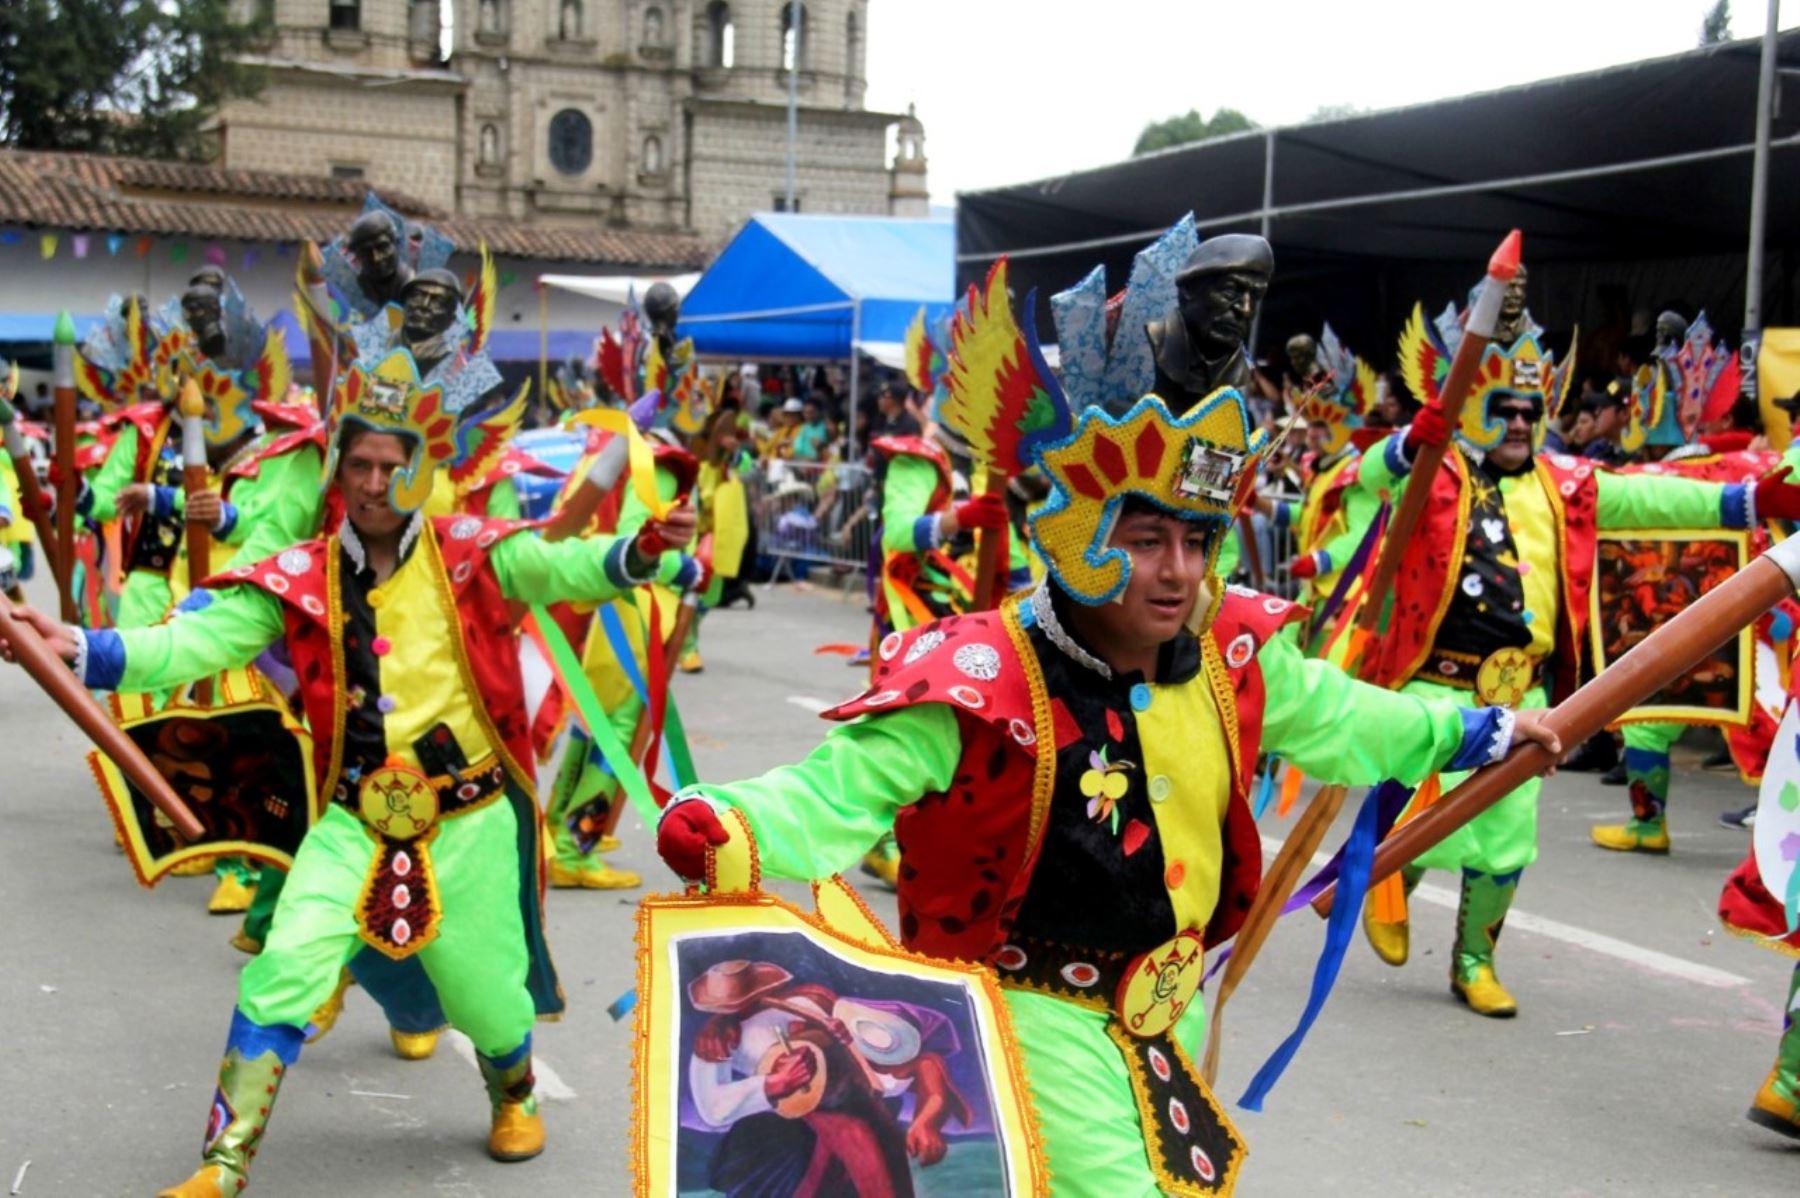 Miles de personas, pobladores y turistas viven intensamente la fiesta del tradicional carnaval de Cajamarca que volvió a la presencialidad después de dos años de suspensión por la pandemia de covid-19. Foto: Eduard Lozano